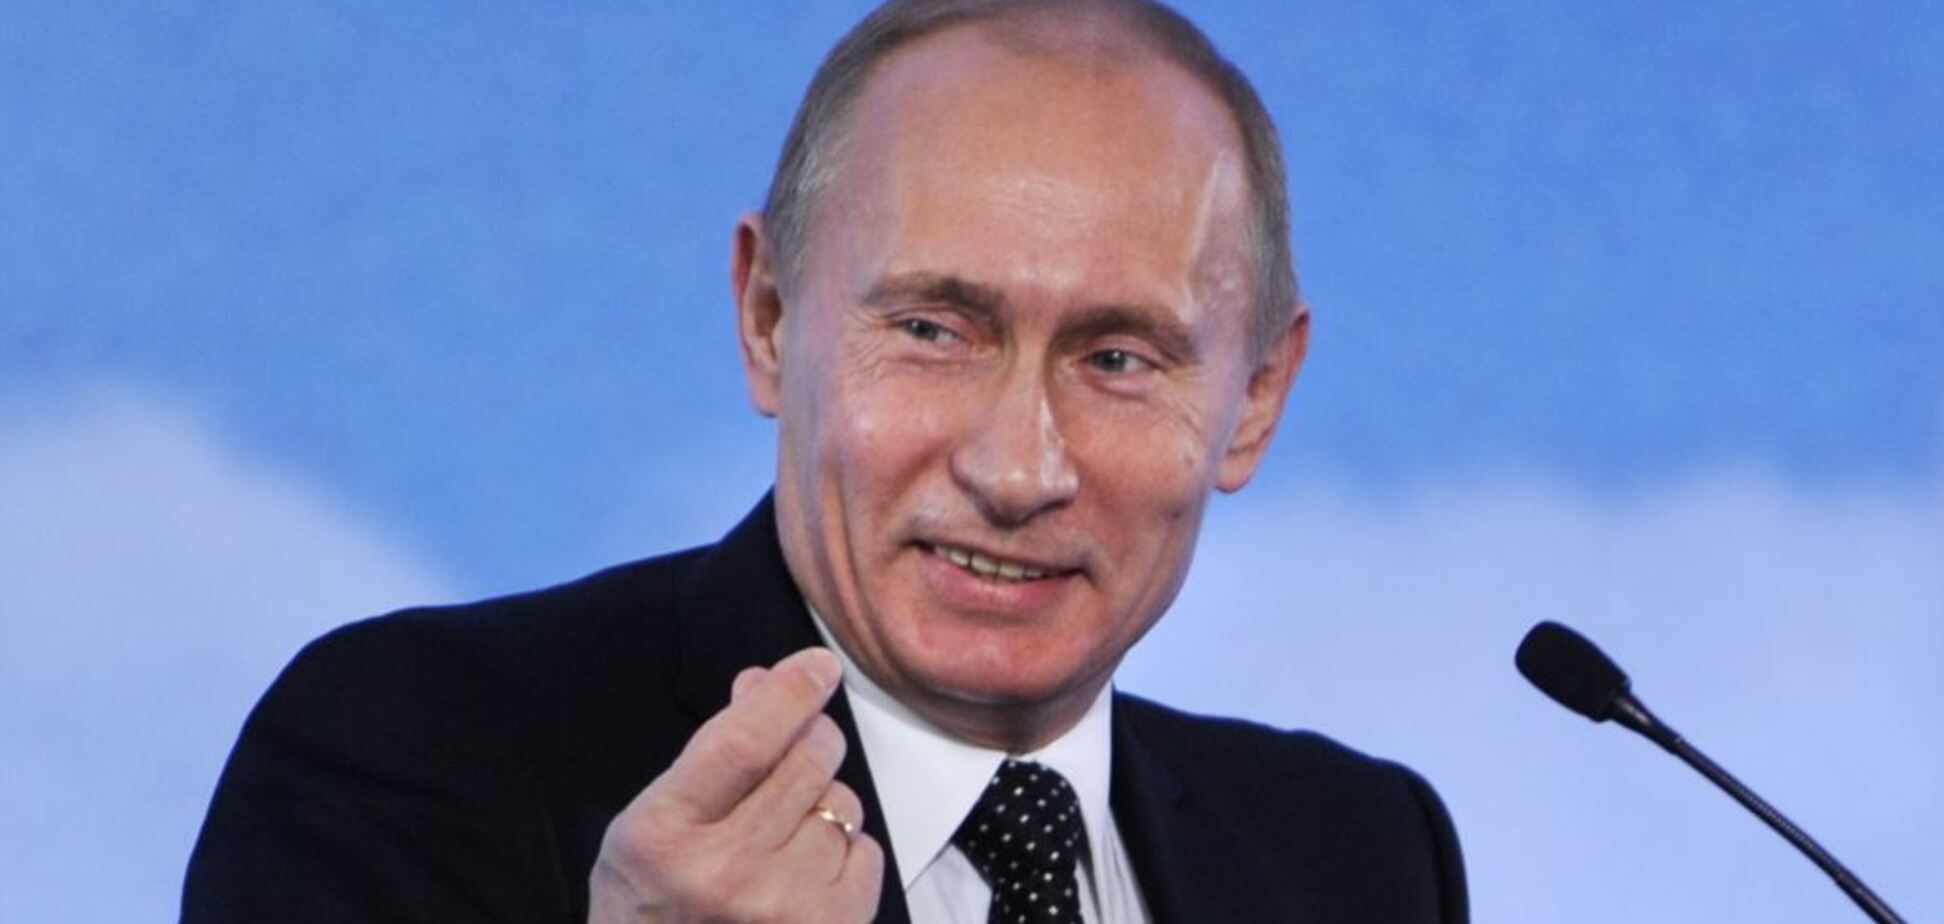 Чекайте провокацій: МЗС України зробило попередження через вибори Путіна